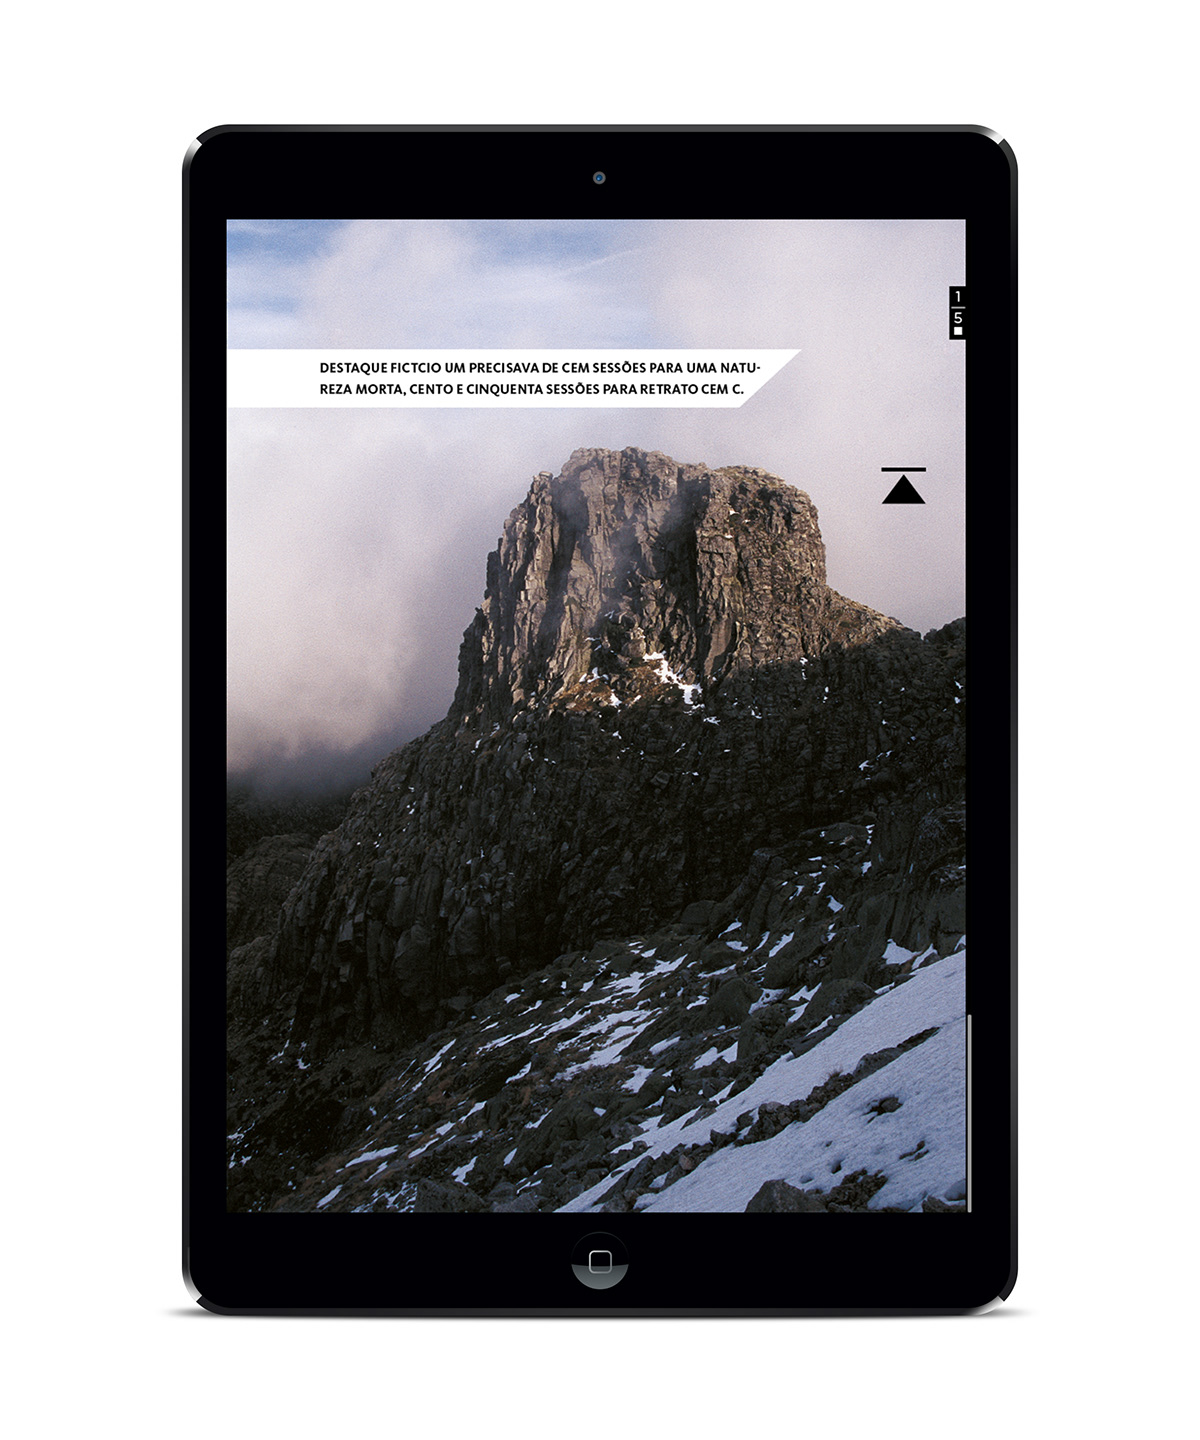 iPad App let'sGO digital interactive